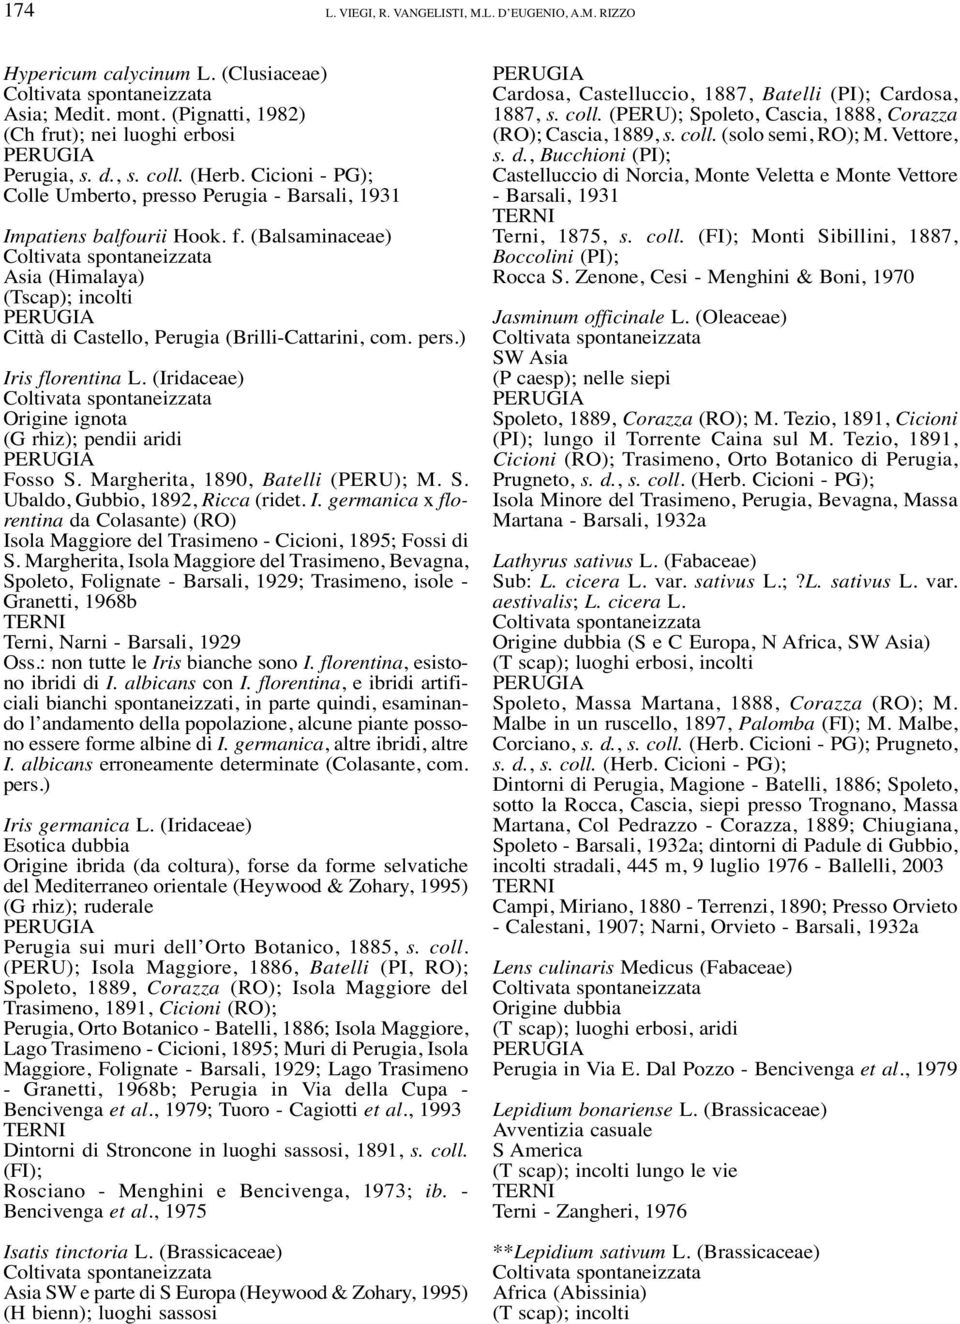 ) Iris florentina L. (Iridaceae) Origine ignota (G rhiz); pendii aridi Fosso S. Margherita, 1890, Batelli (PERU); M. S. Ubaldo, Gubbio, 1892, Ricca (ridet. I. germanica x florentina da Colasante) (RO) Isola Maggiore del Trasimeno - Cicioni, 1895; Fossi di S.